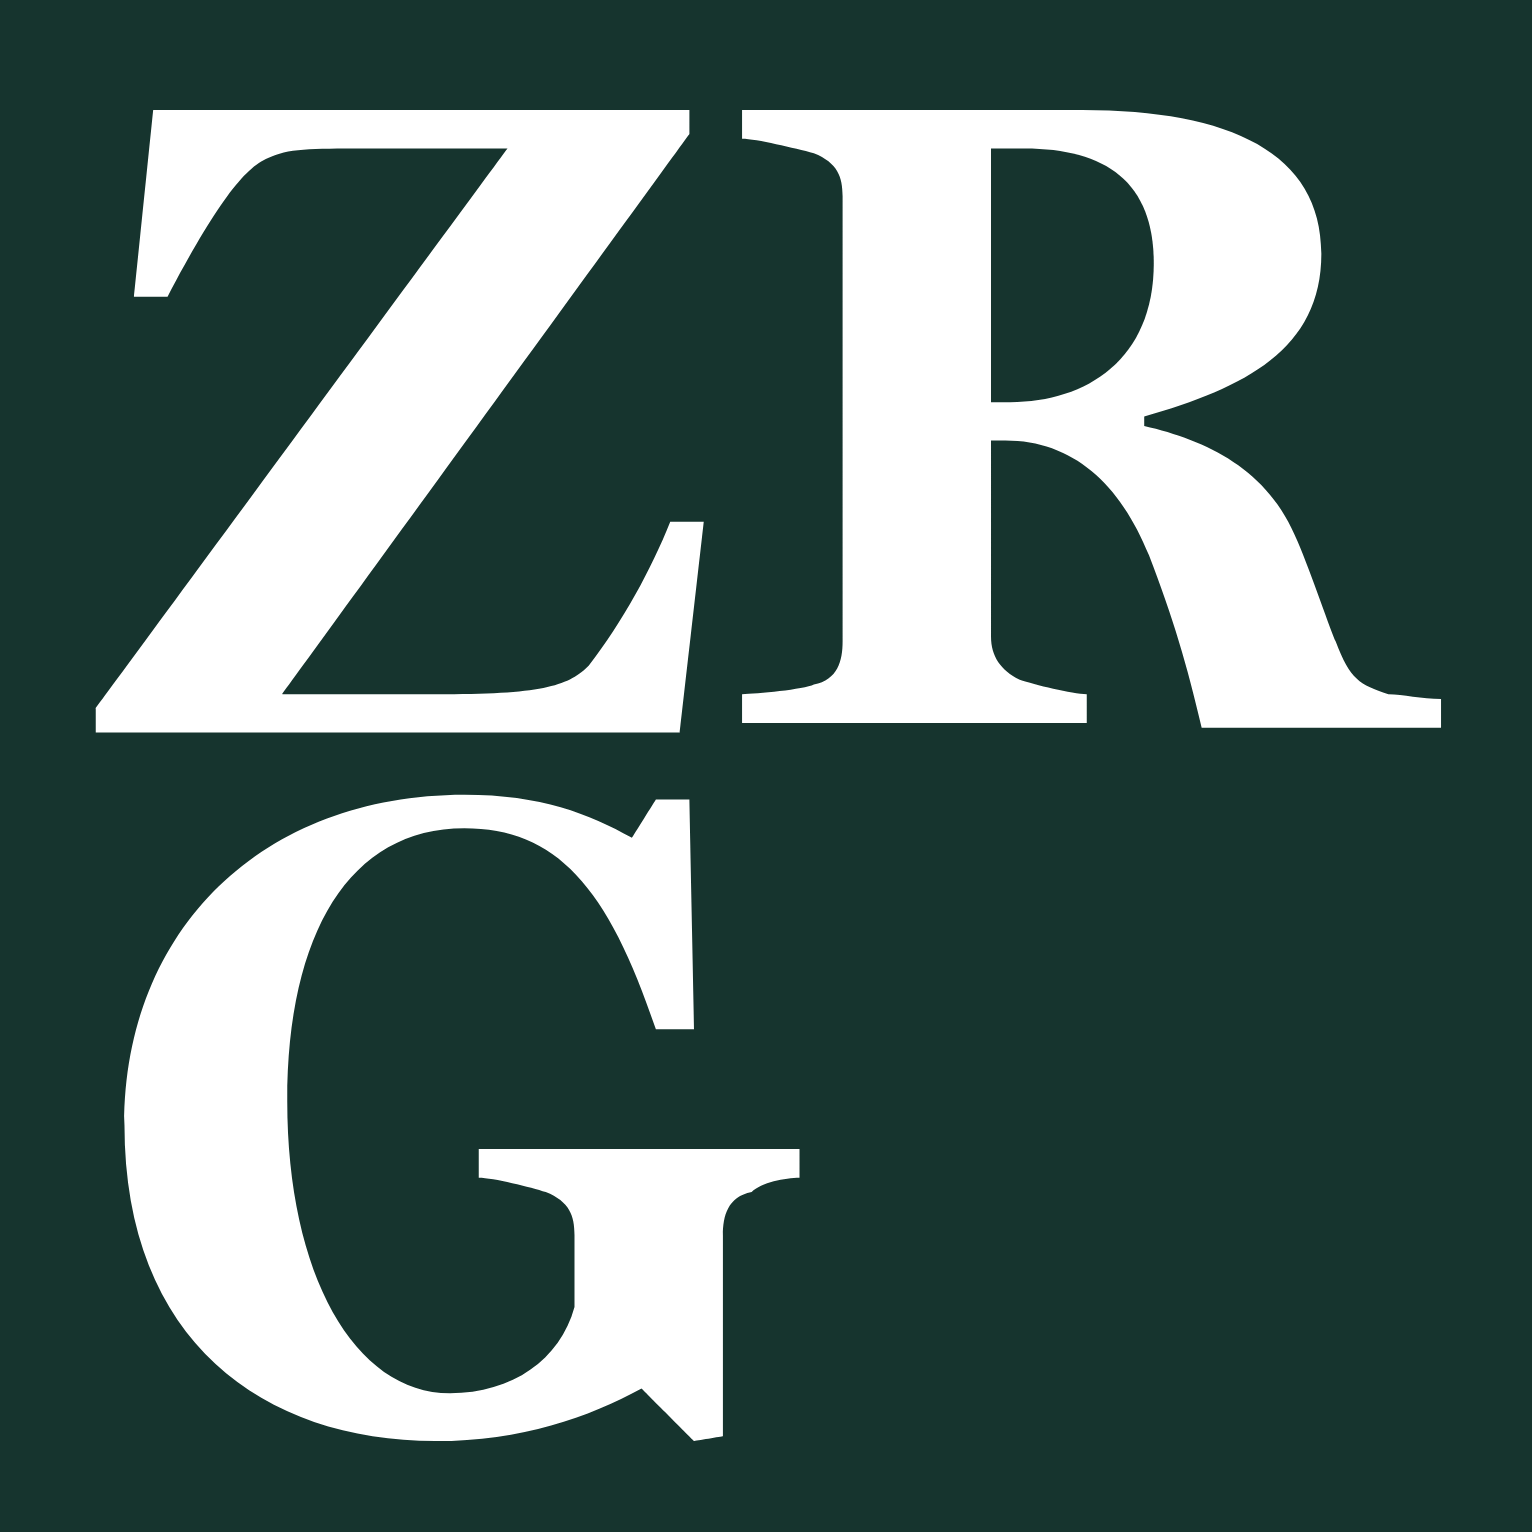 Zur Rose Group logo (PNG transparent)